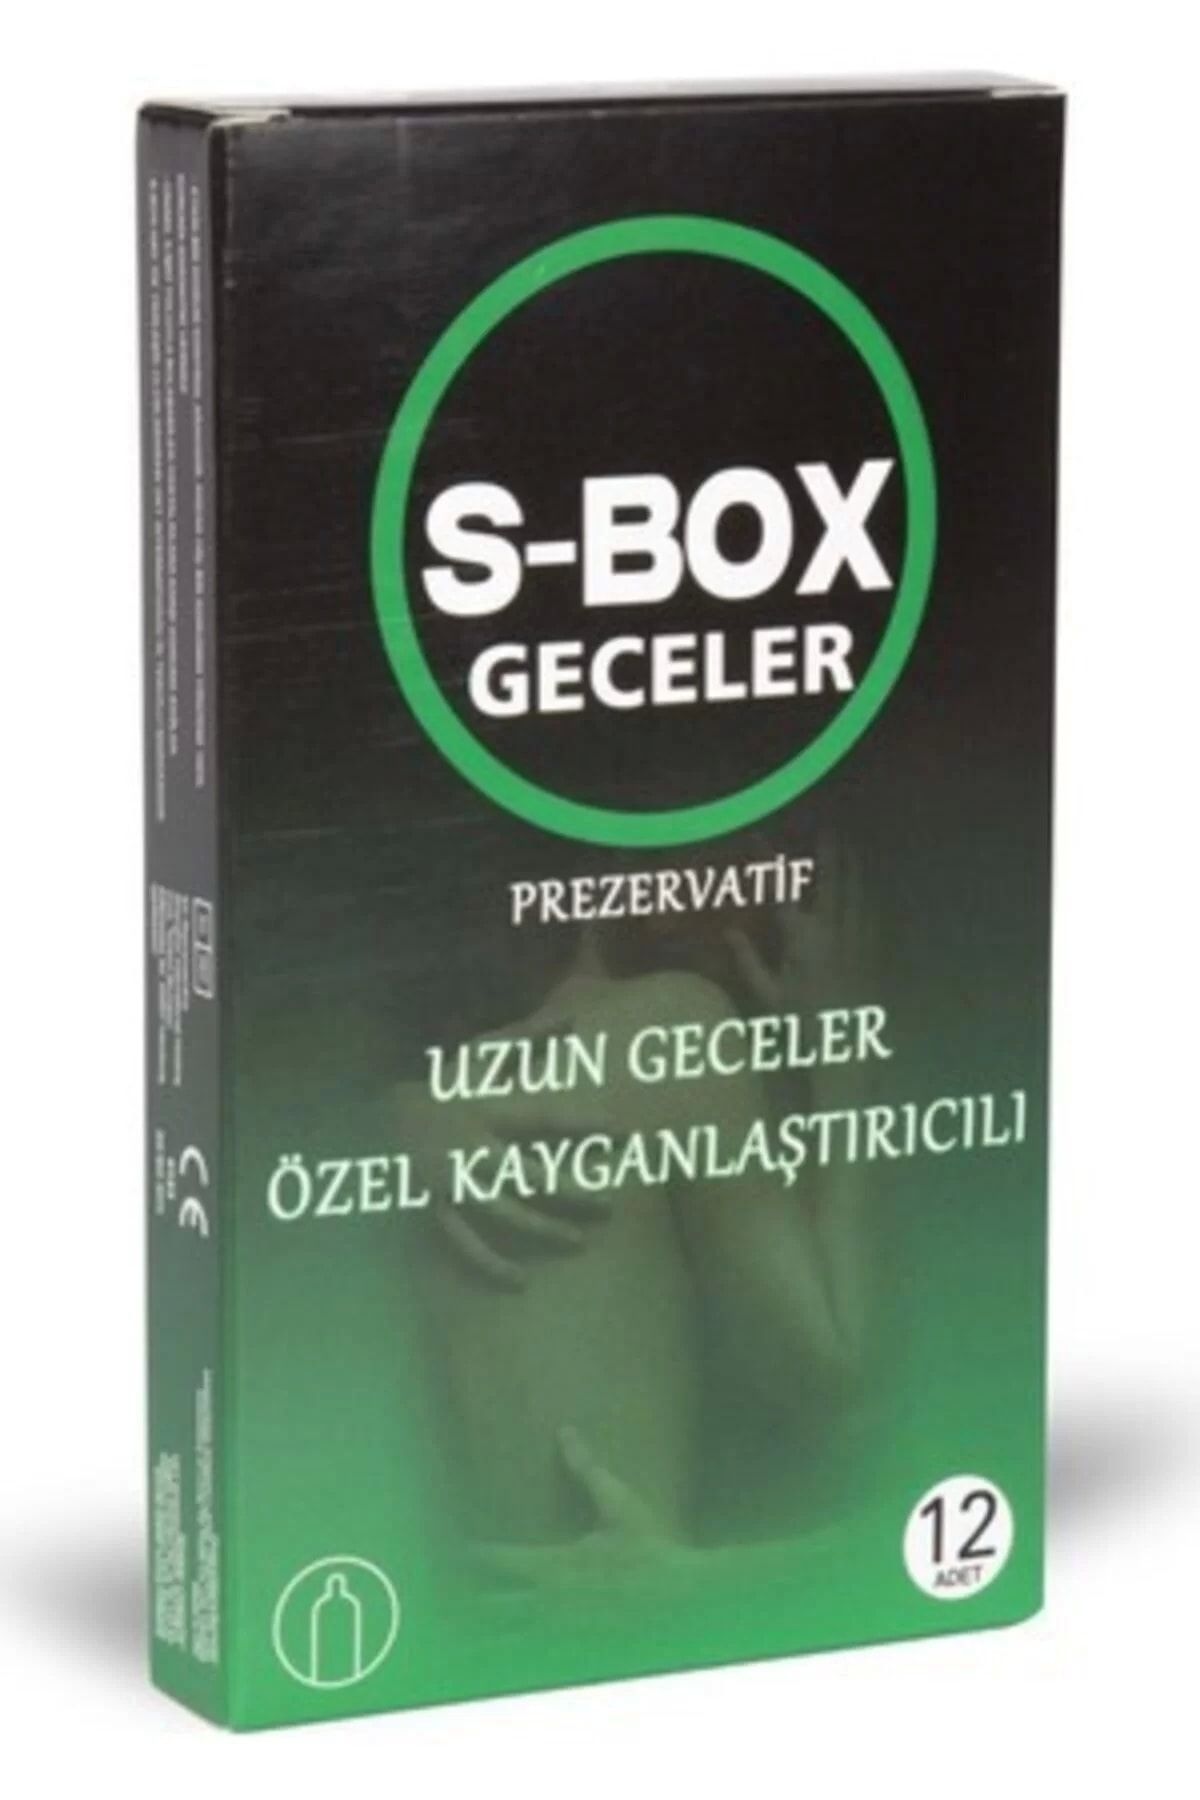 S-Box Prezervatif Uzun Geceler Özel Kayganştırıcılı 12 Adet